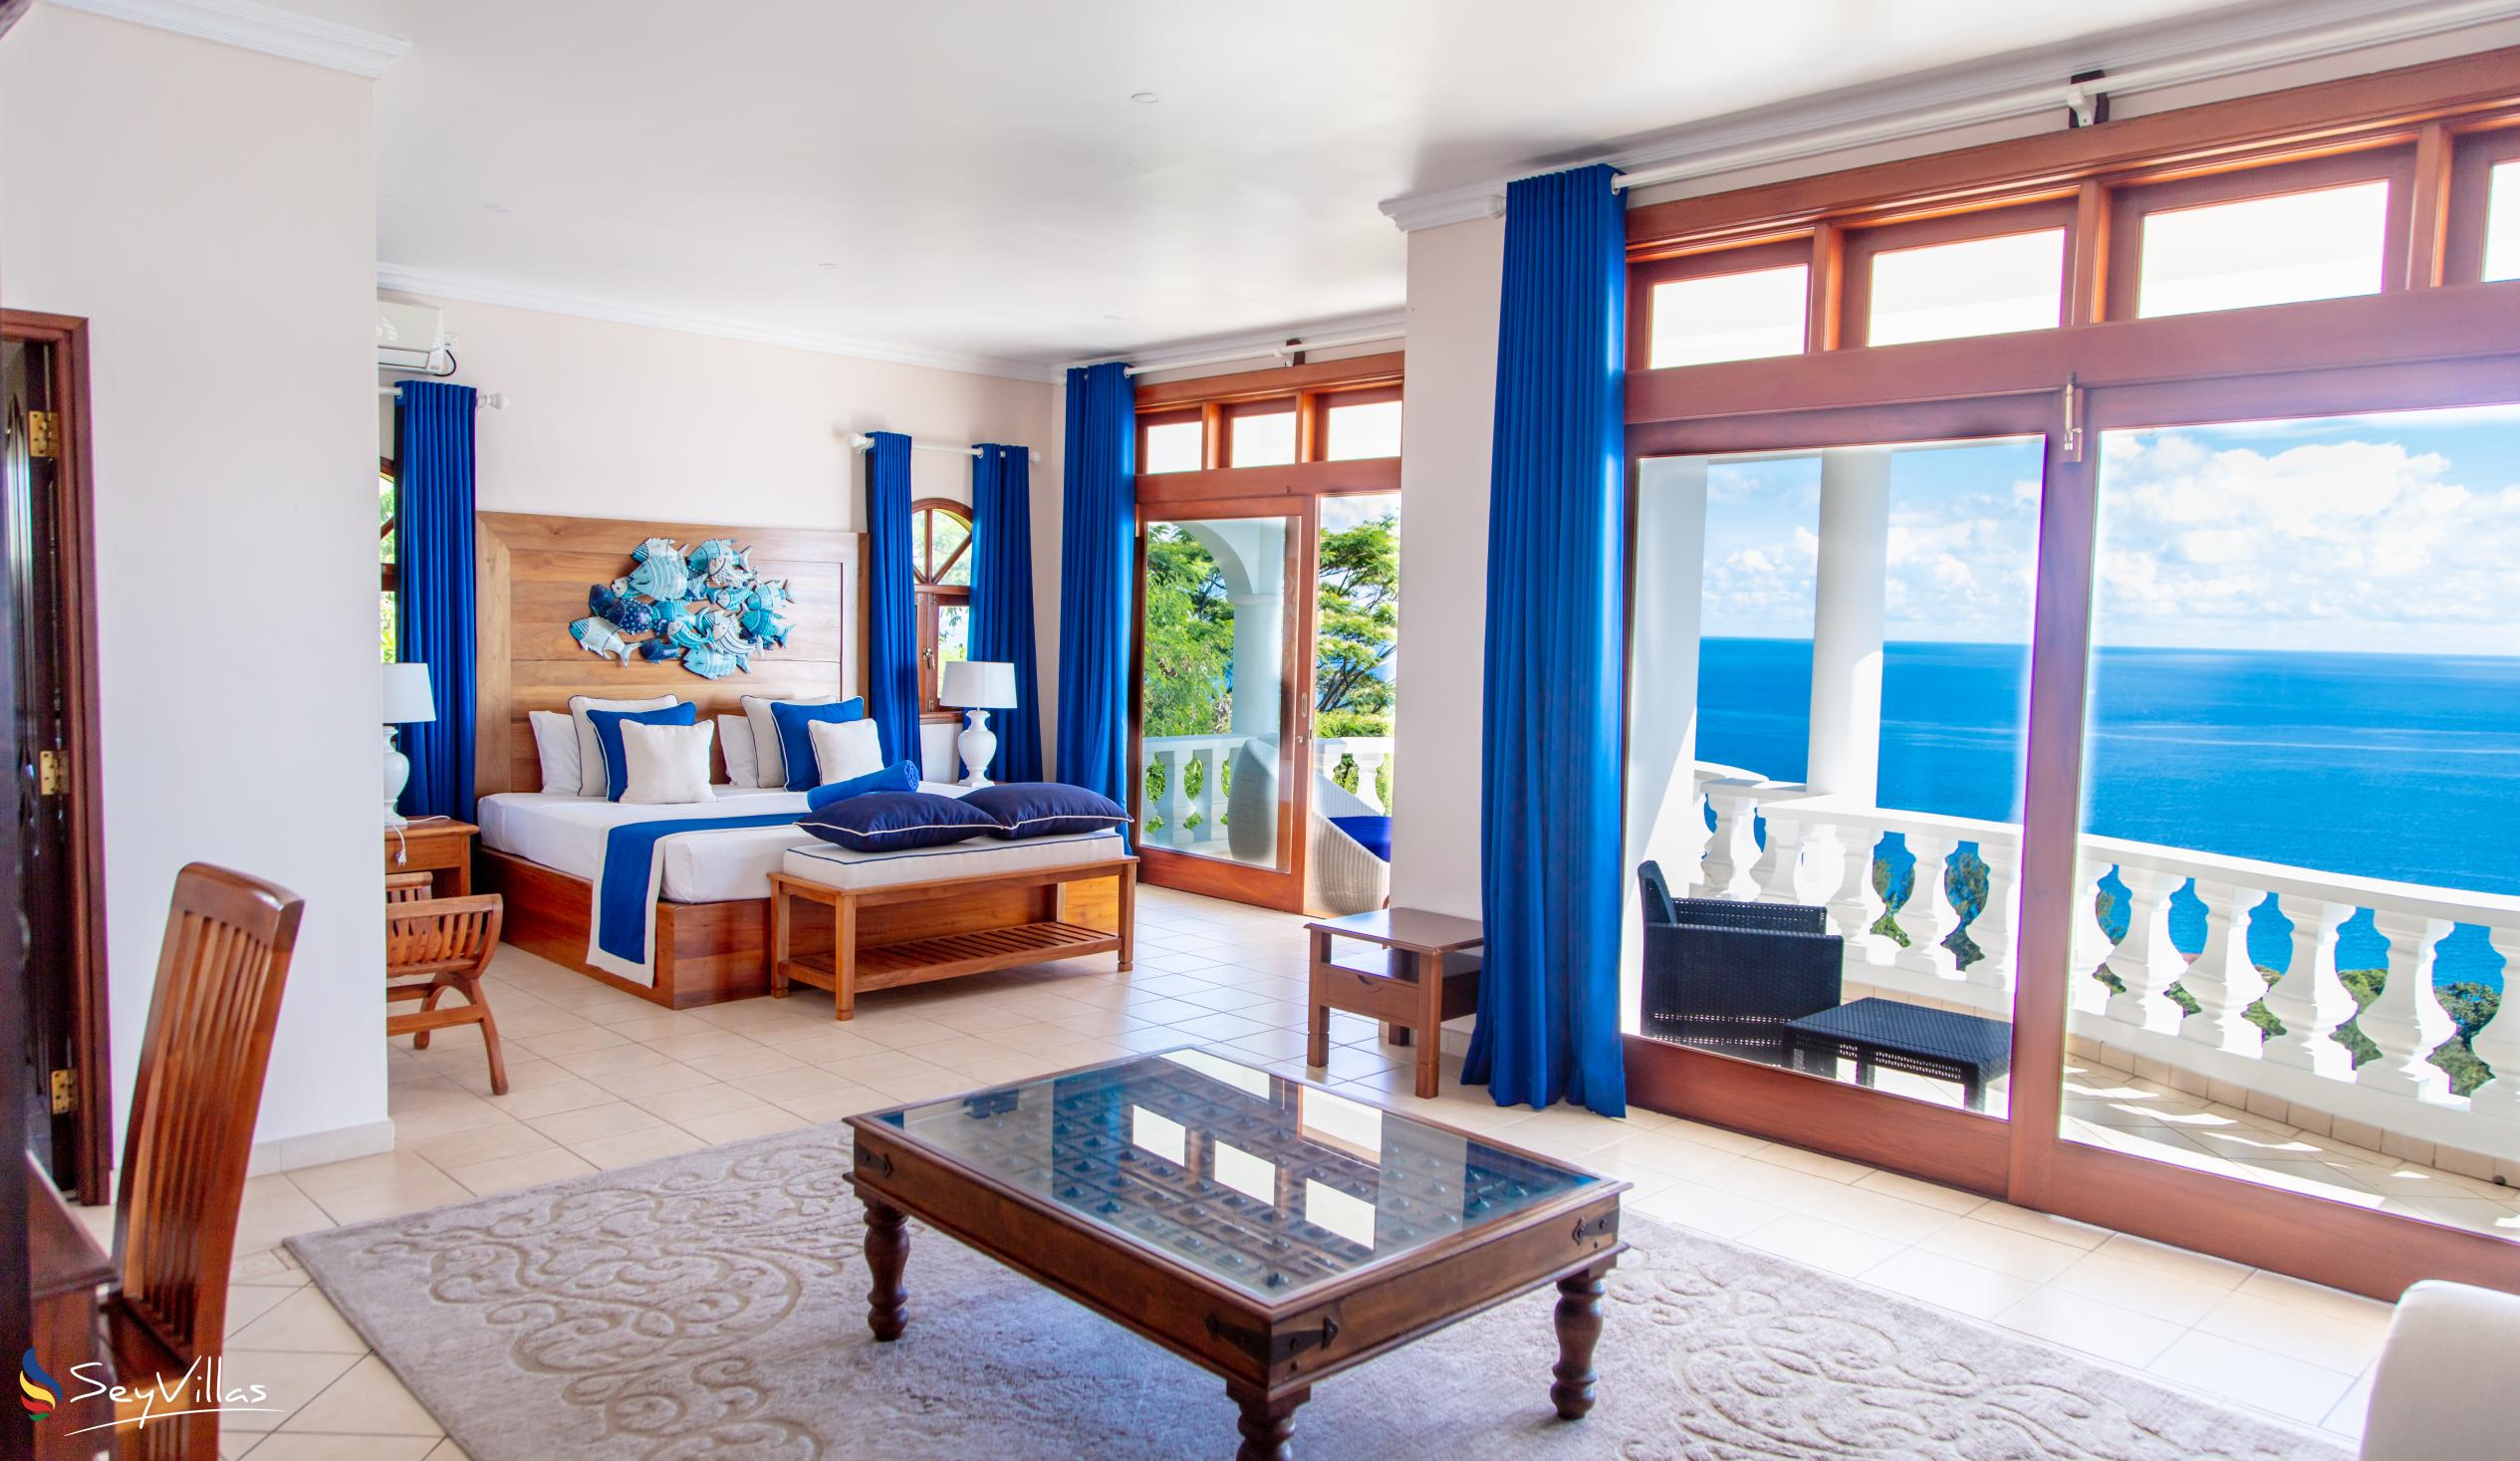 Foto 16: Blu Vista Villa - Villa 4 chambres - Mahé (Seychelles)